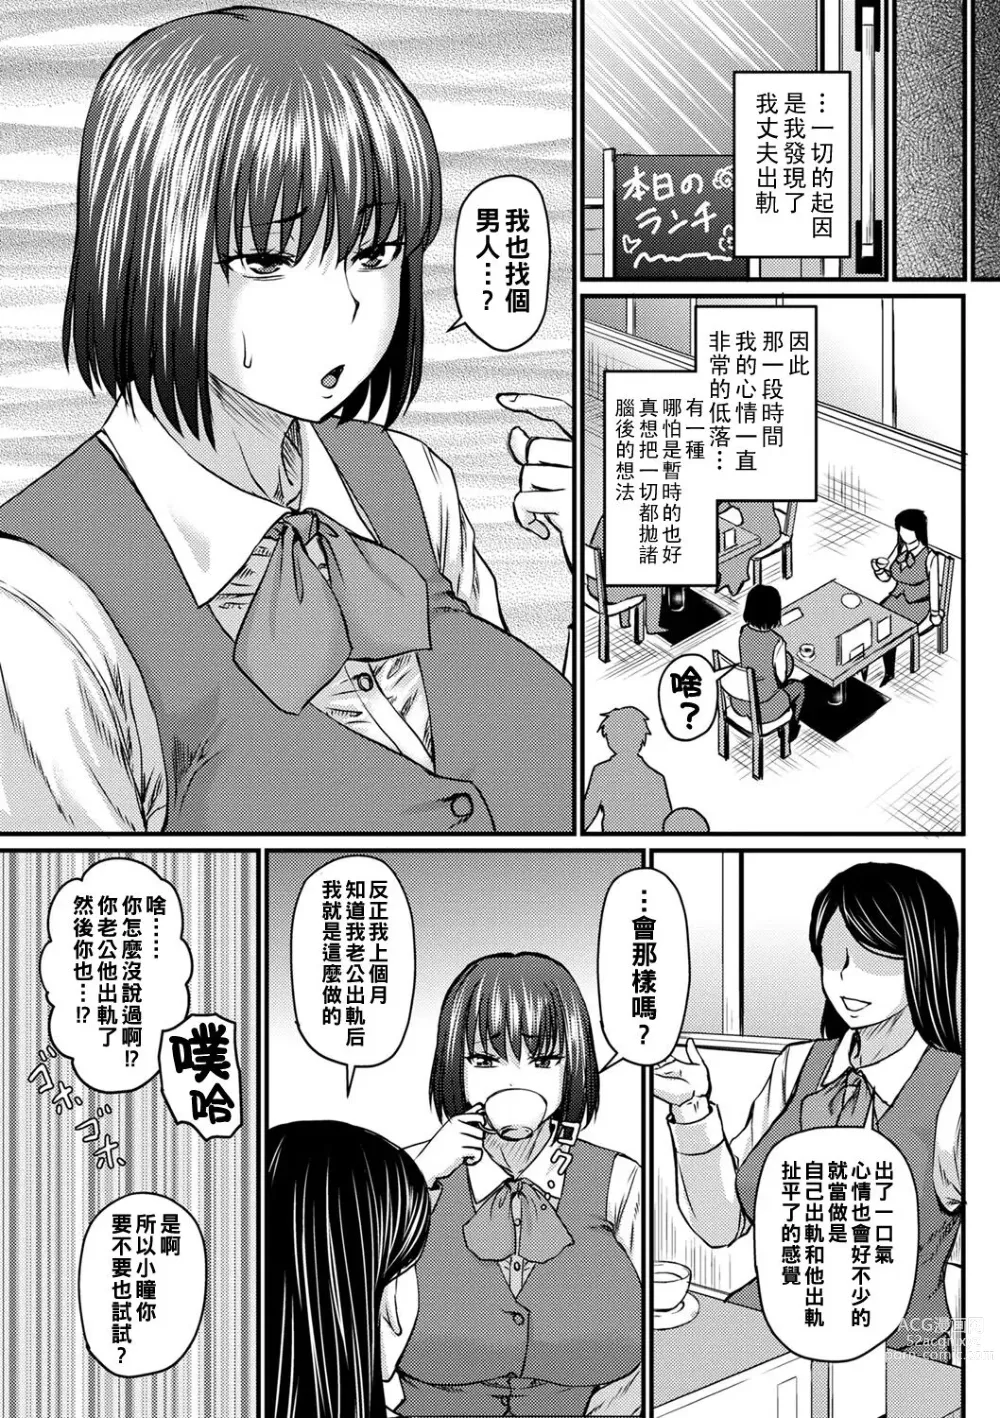 Page 5 of manga Uwaki no Susume